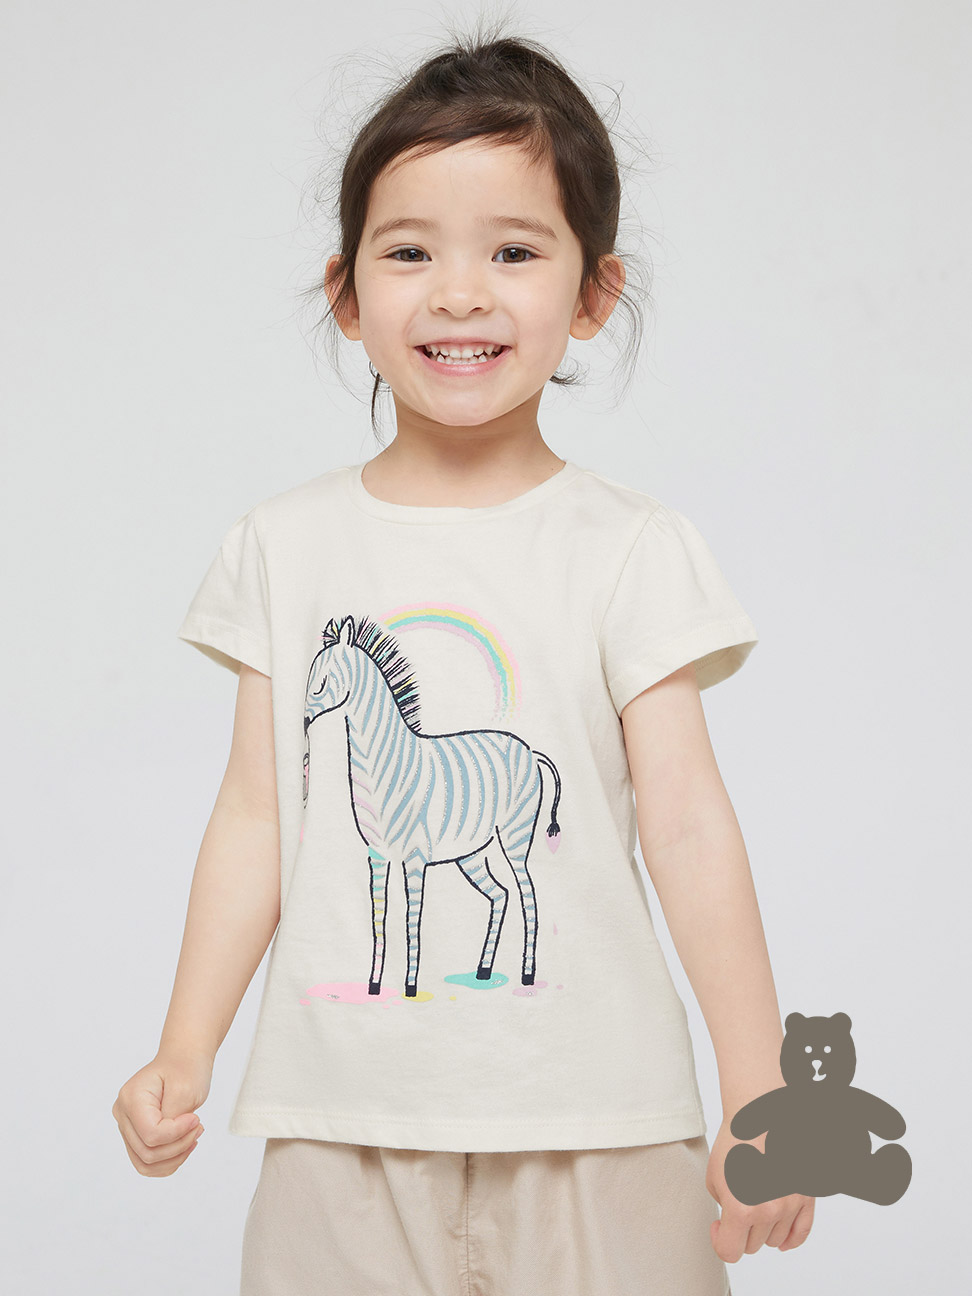 女幼童裝|童趣印花泡泡袖T恤 布萊納系列-象牙白